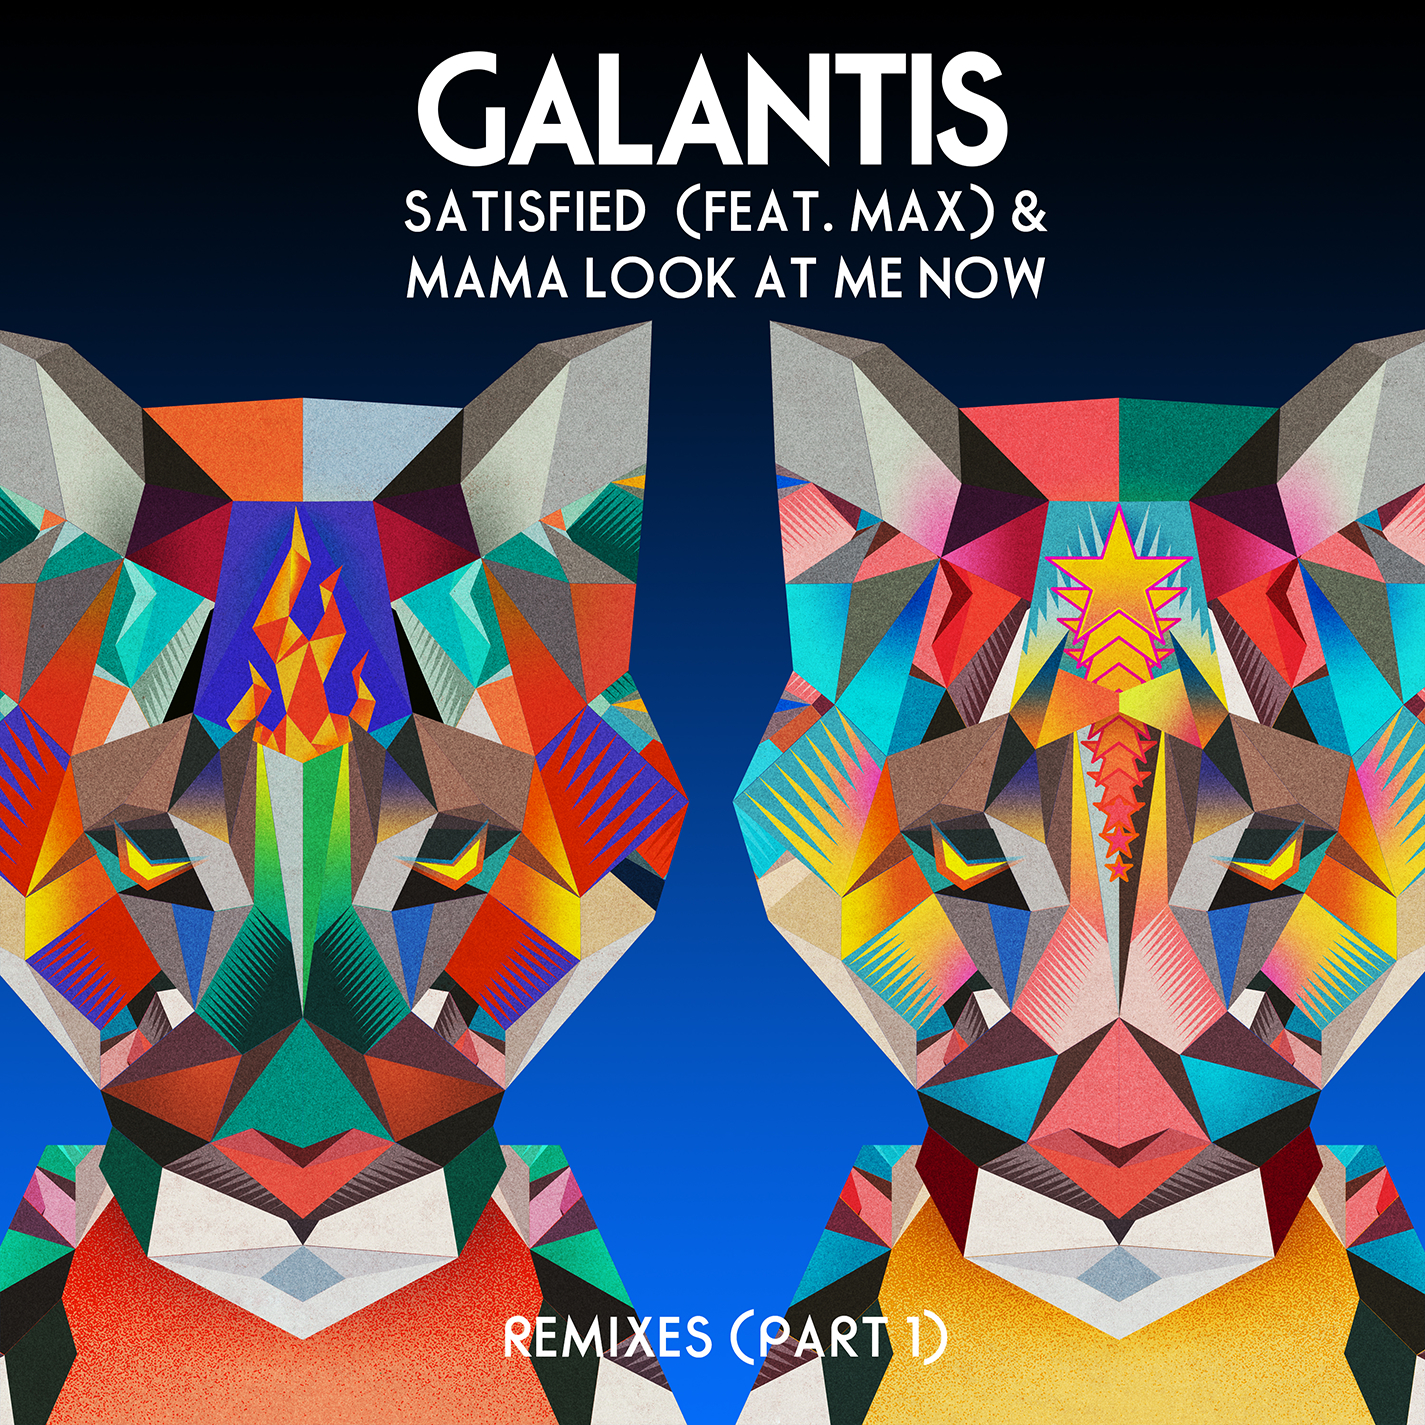 Mama Look At Me Now (Galantis x Deniz Koyu VIP Remix)